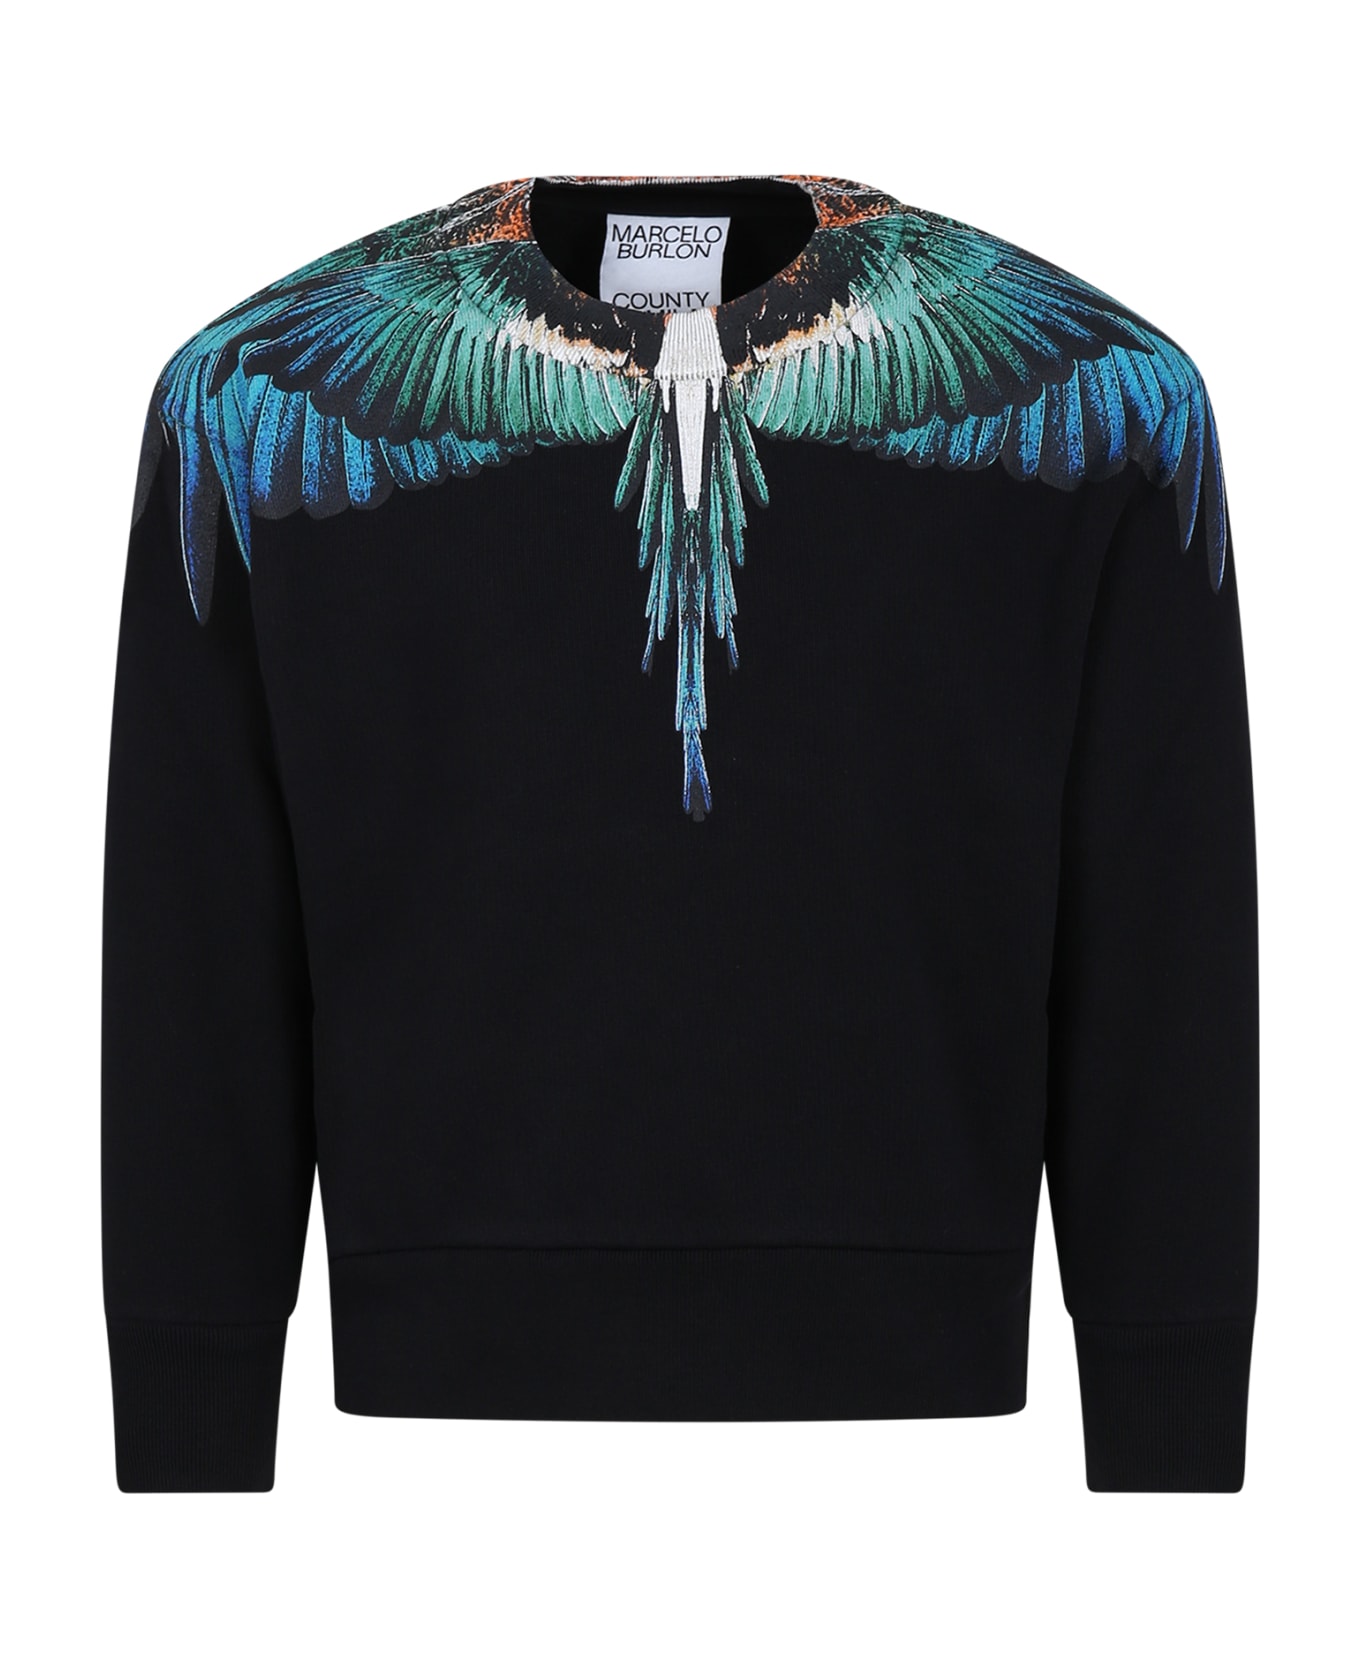 Marcelo Burlon Black Sweatshirt For Boy With Wings - Black Bl